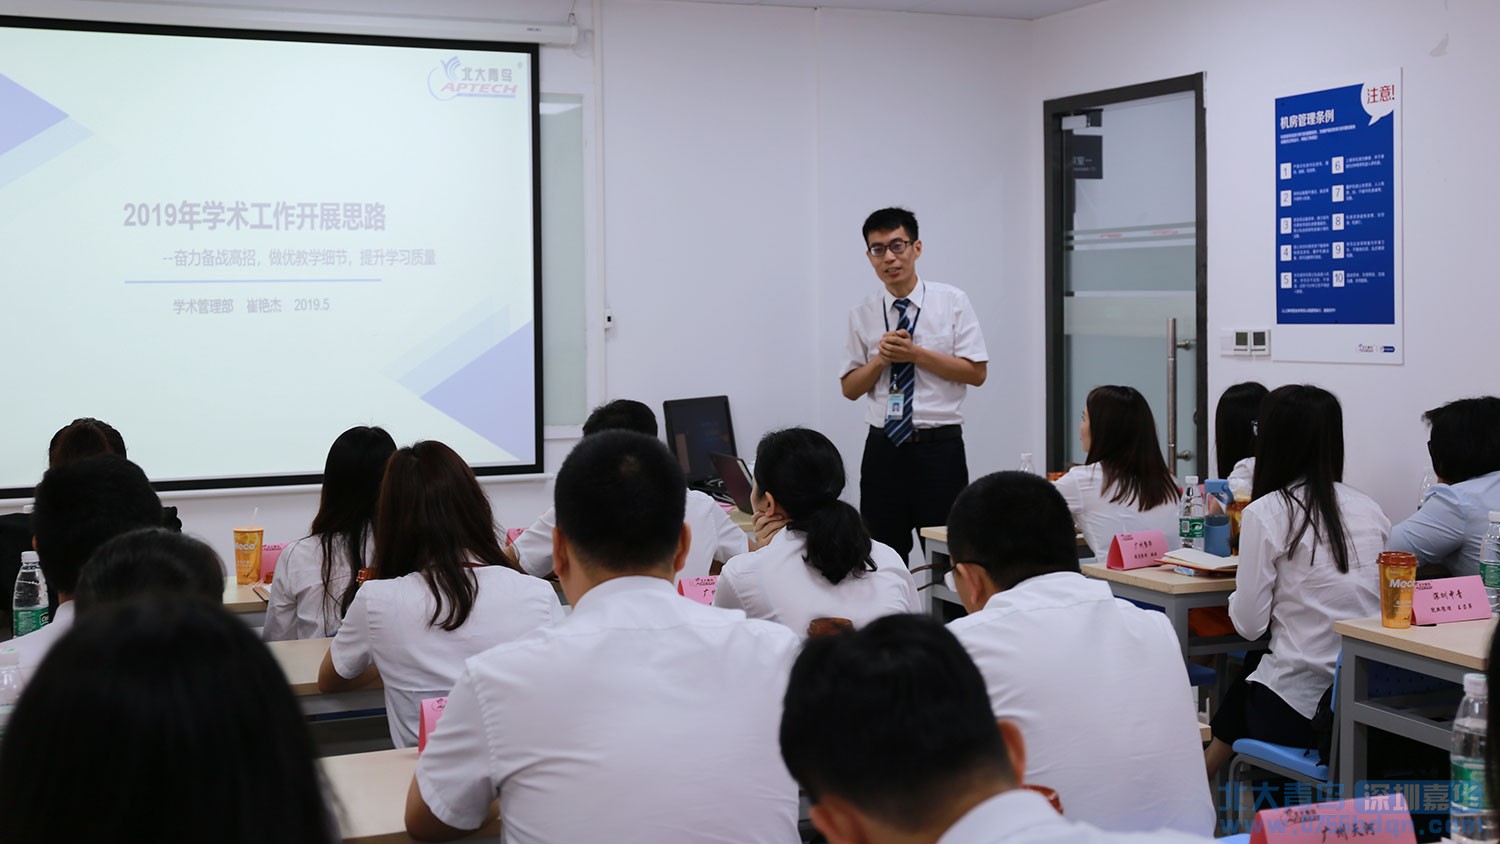 嘉华教育集团承办北大青鸟APTECH 2019年第二季度华南区教学就业区域研讨会